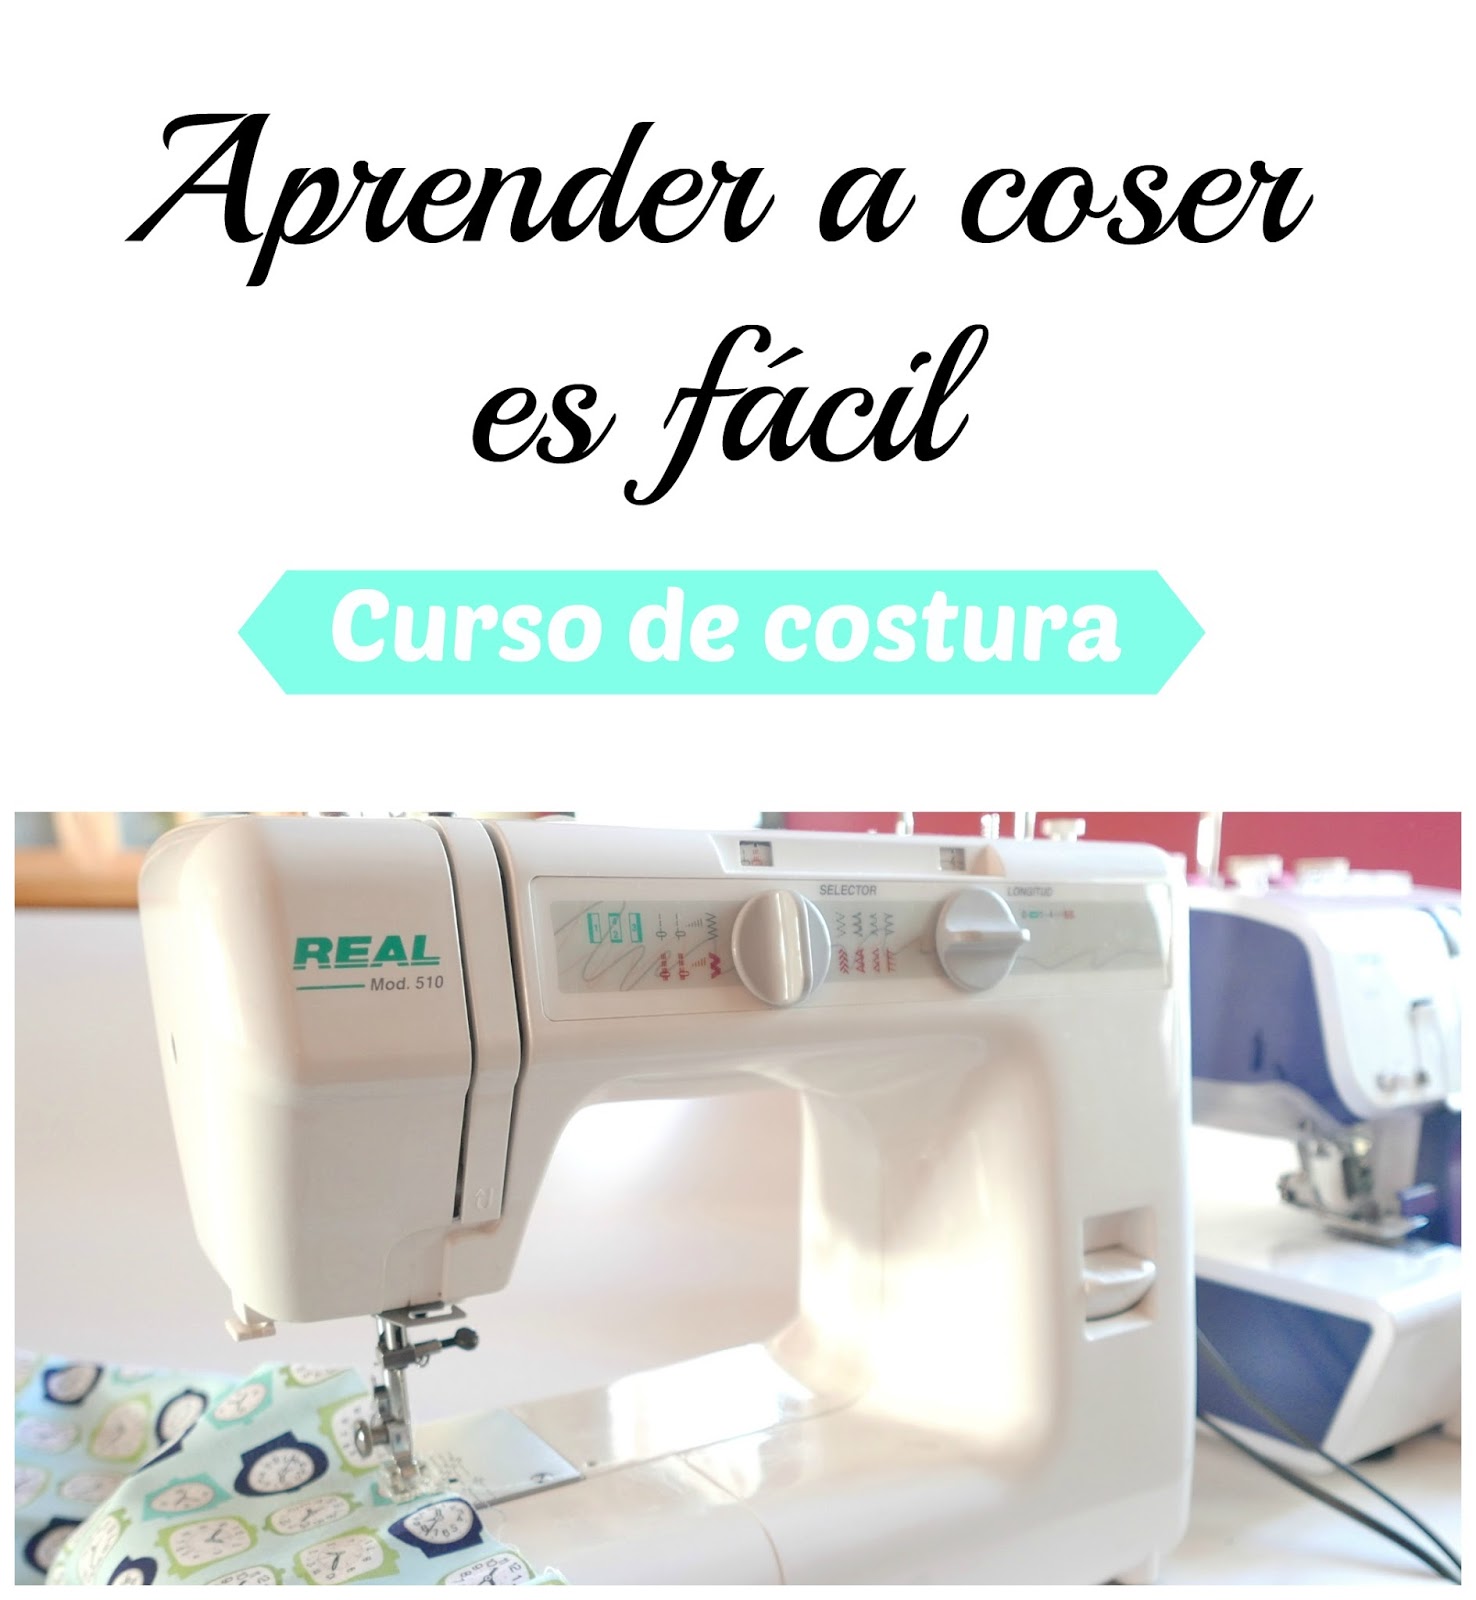 Ejercicios para aprender a coser a máquina - La costurería